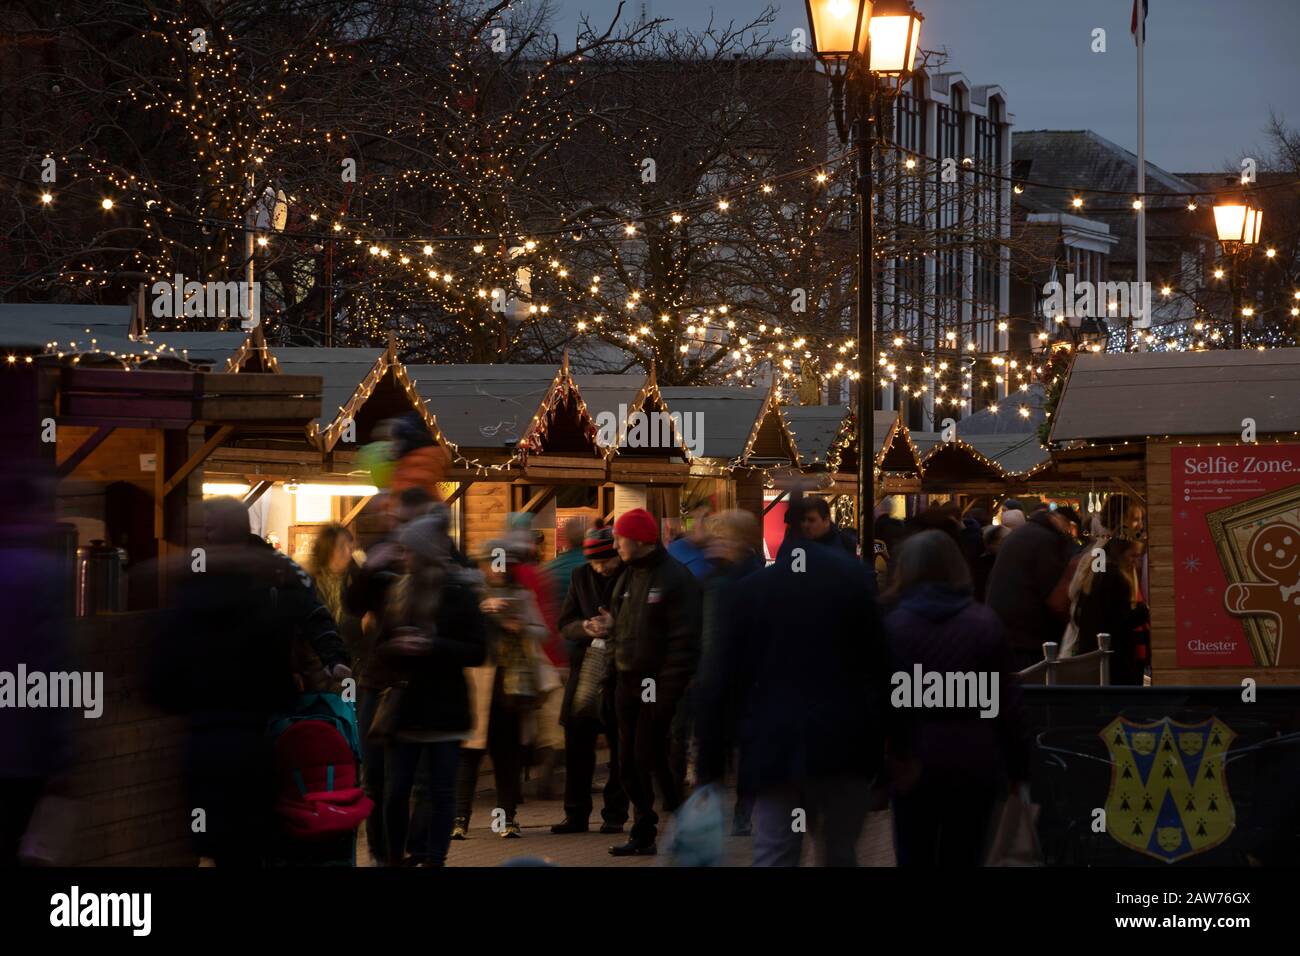 Les visiteurs du marché de Noël de Chester parcourent et font des achats de cadeaux. Le marché a été élu l'un des 20 marchés de Noël les plus importants d'Europe. En 2019, il y avait environ 70 étals gérés par des détaillants indépendants. Banque D'Images